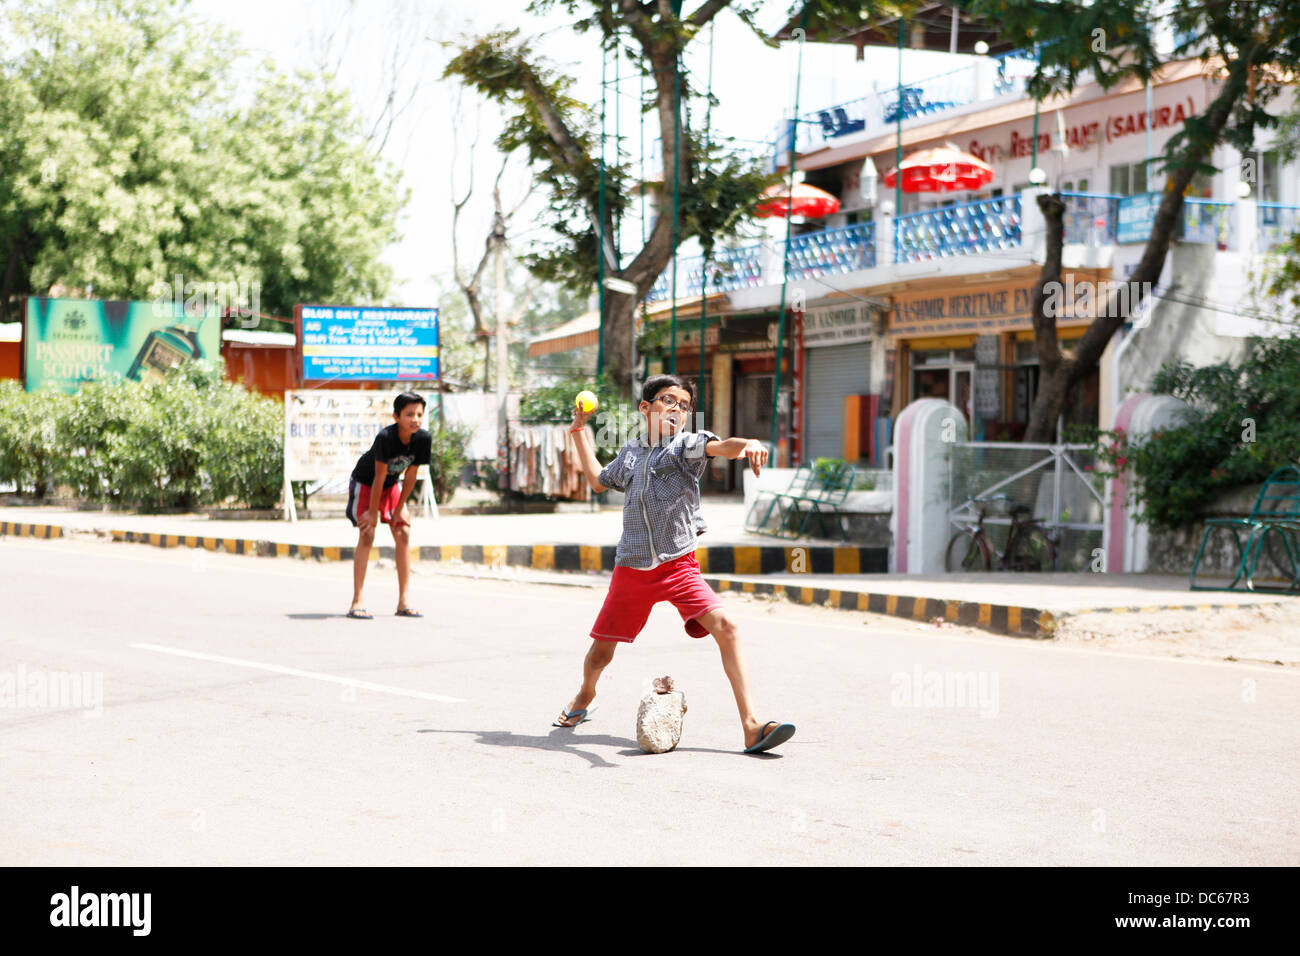 Un joven jugador muestra verdadero entusiasmo como él tazones una pelota durante un juego de cricket de calle en Khajuraho, India Foto de stock